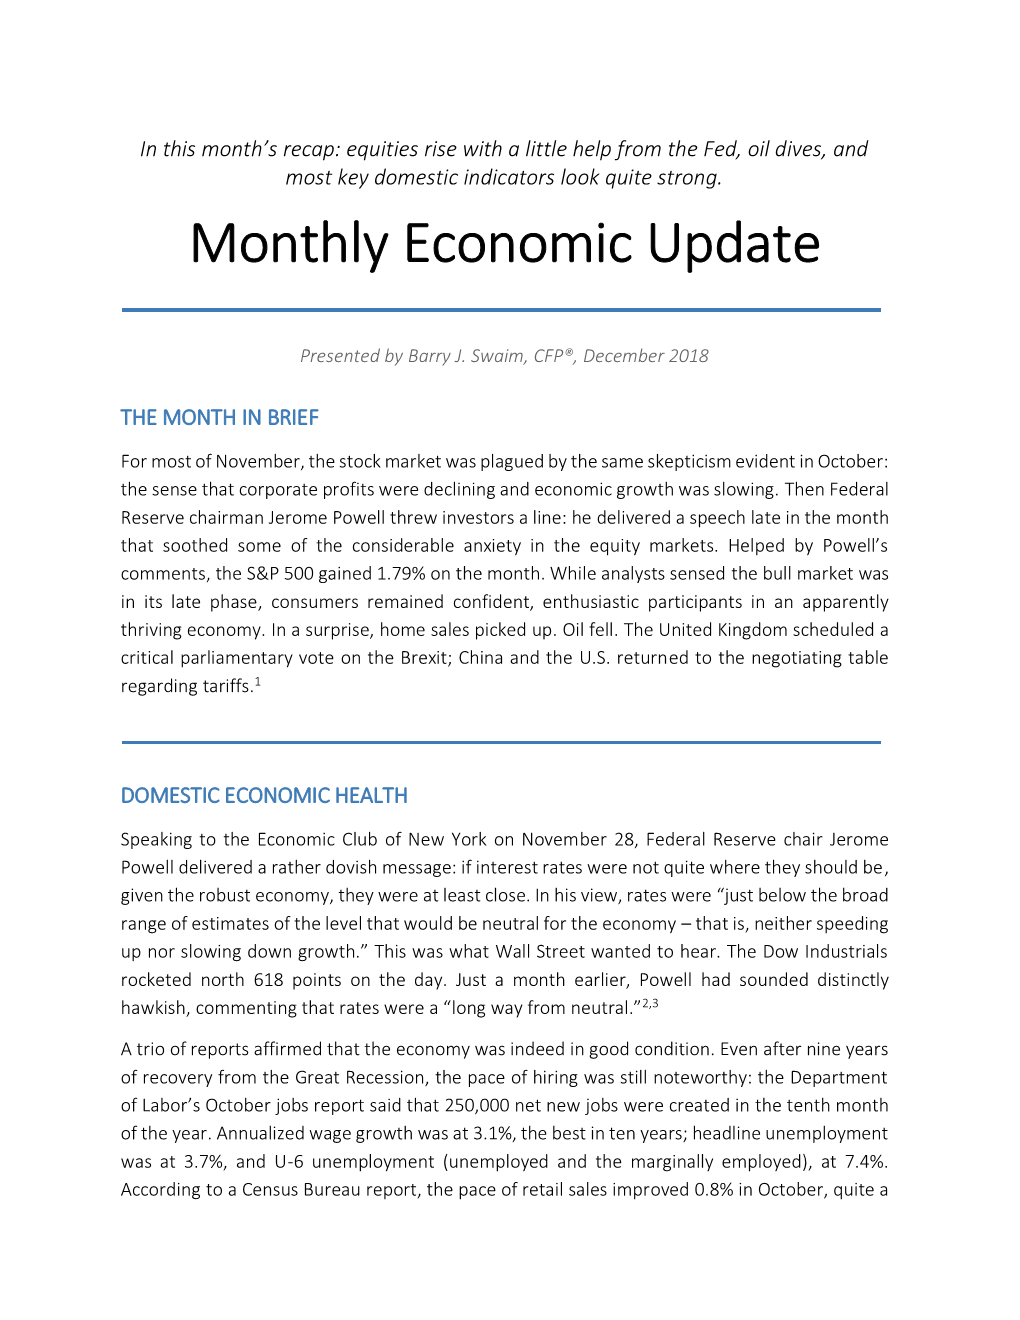 Monthly Economic Update